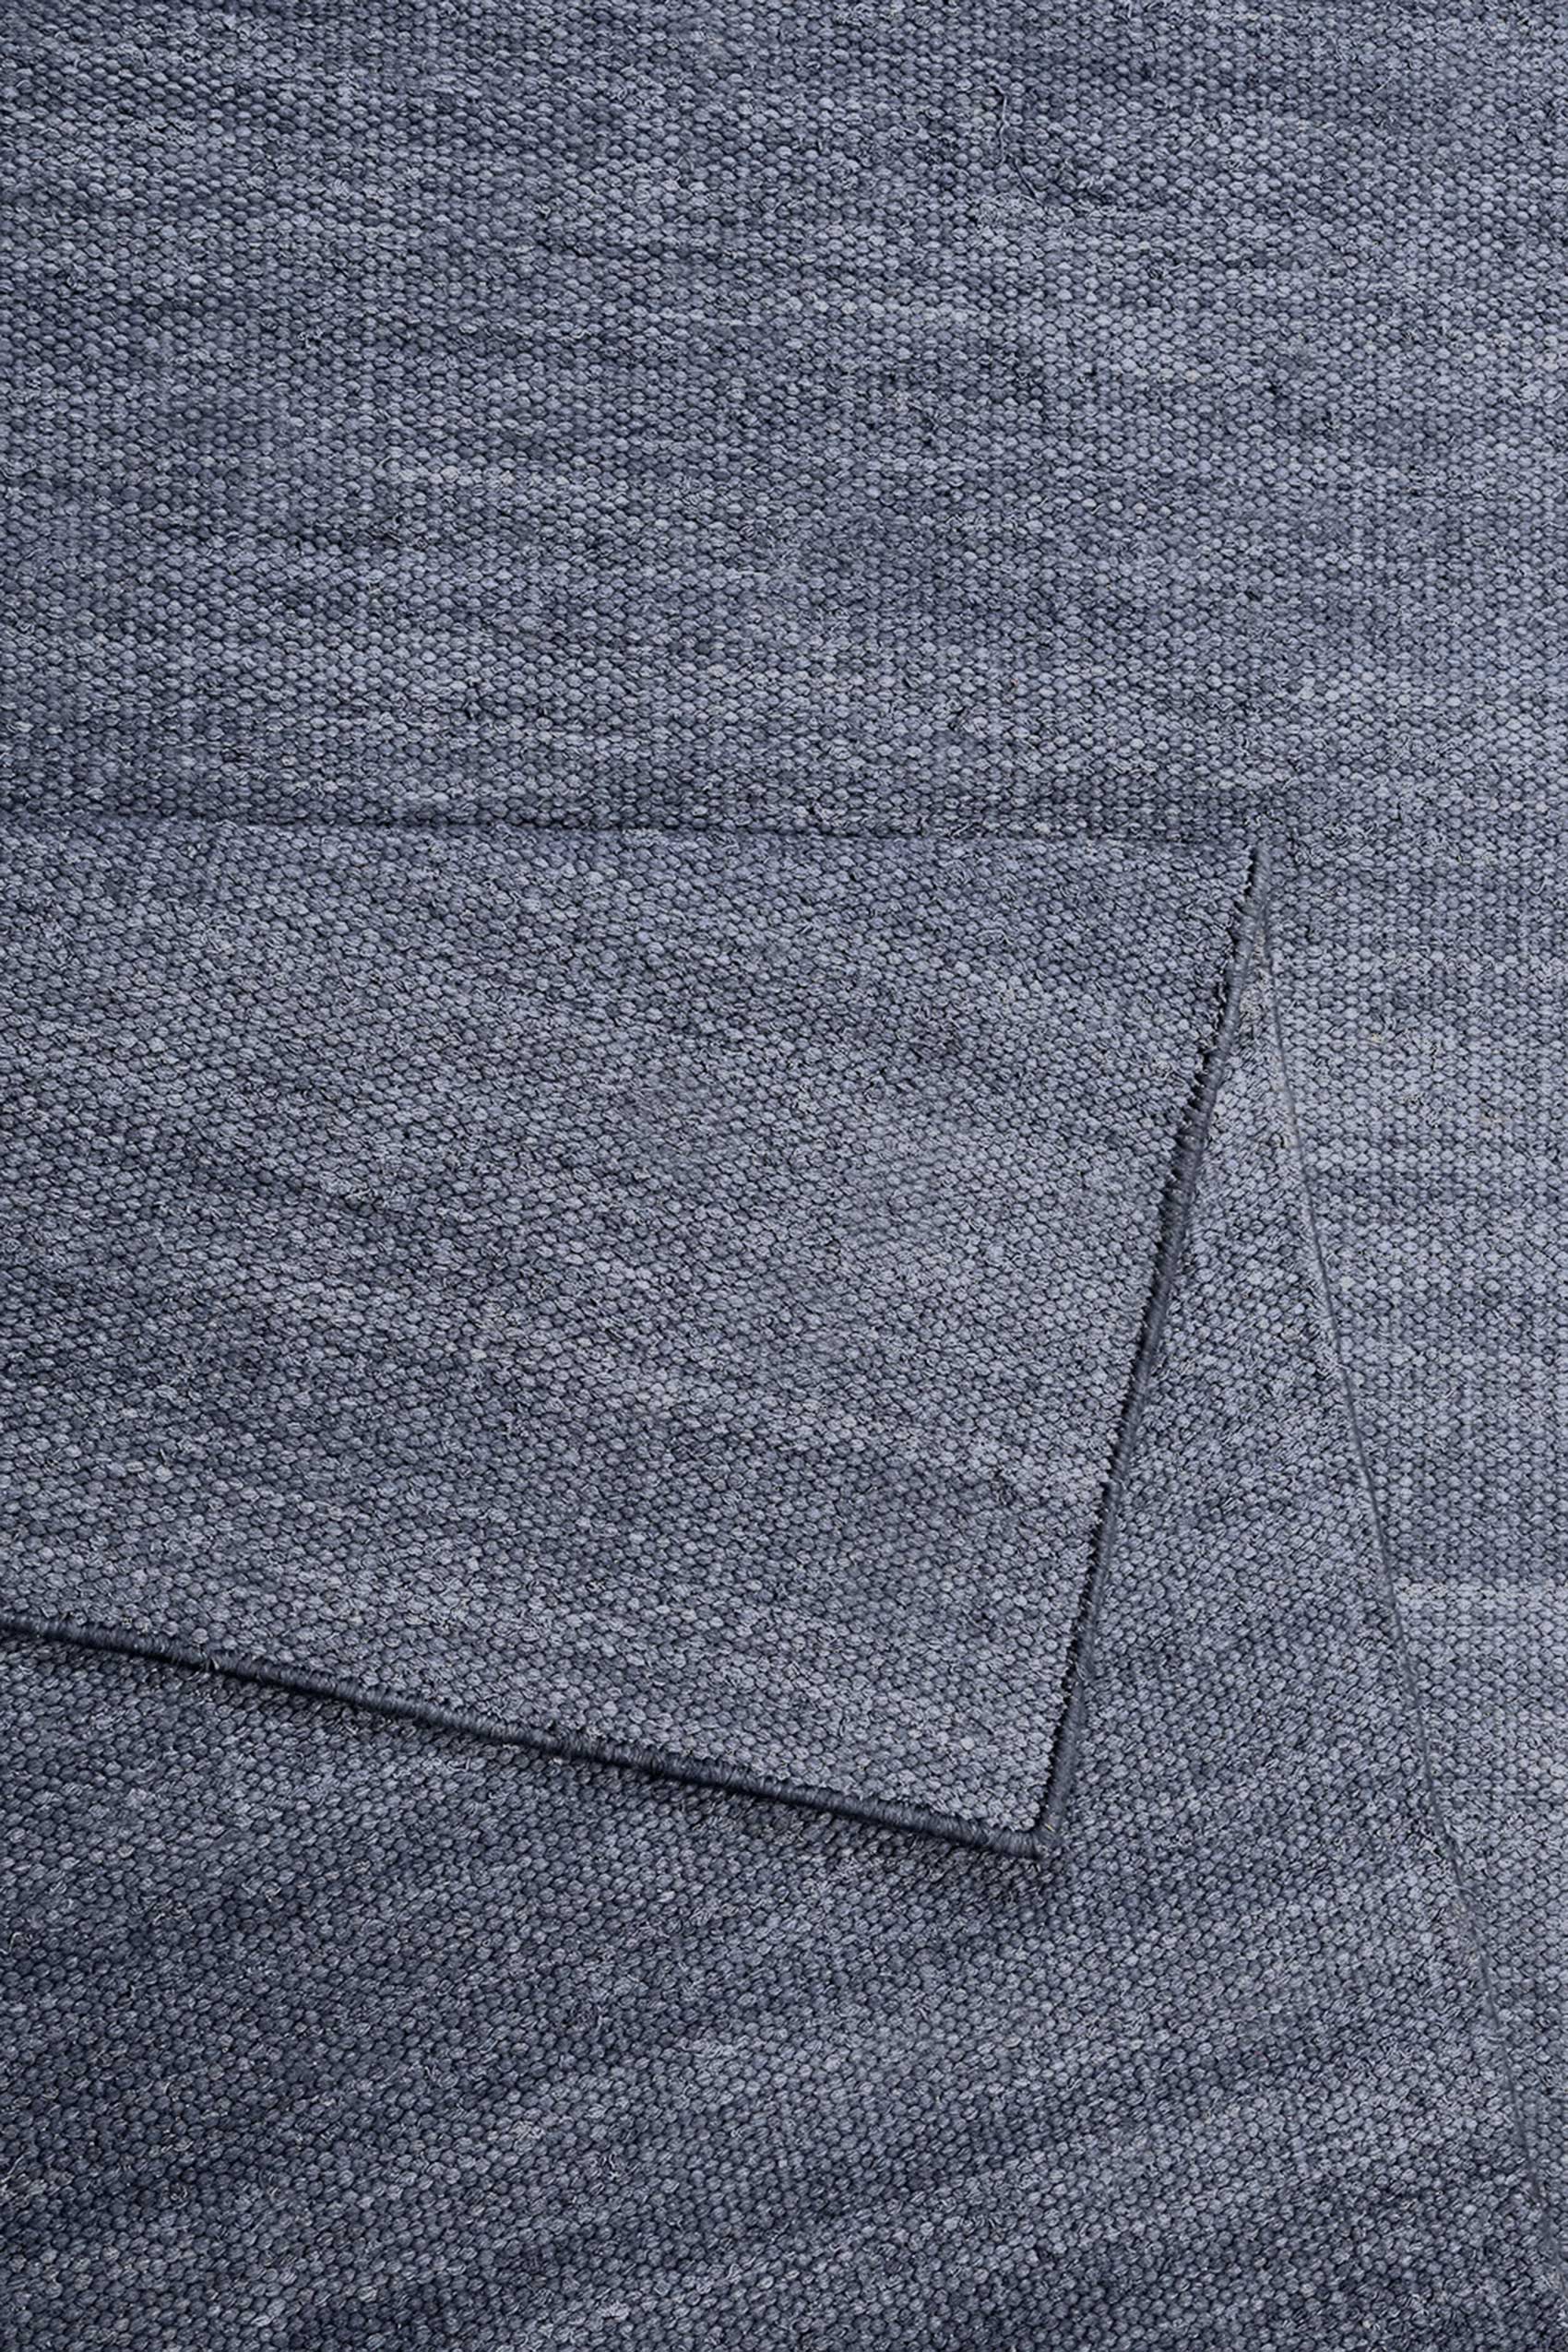 Esprit Kurzflor Teppich Blau Grau aus Baumwolle » Rainbow Kelim « - Ansicht 3